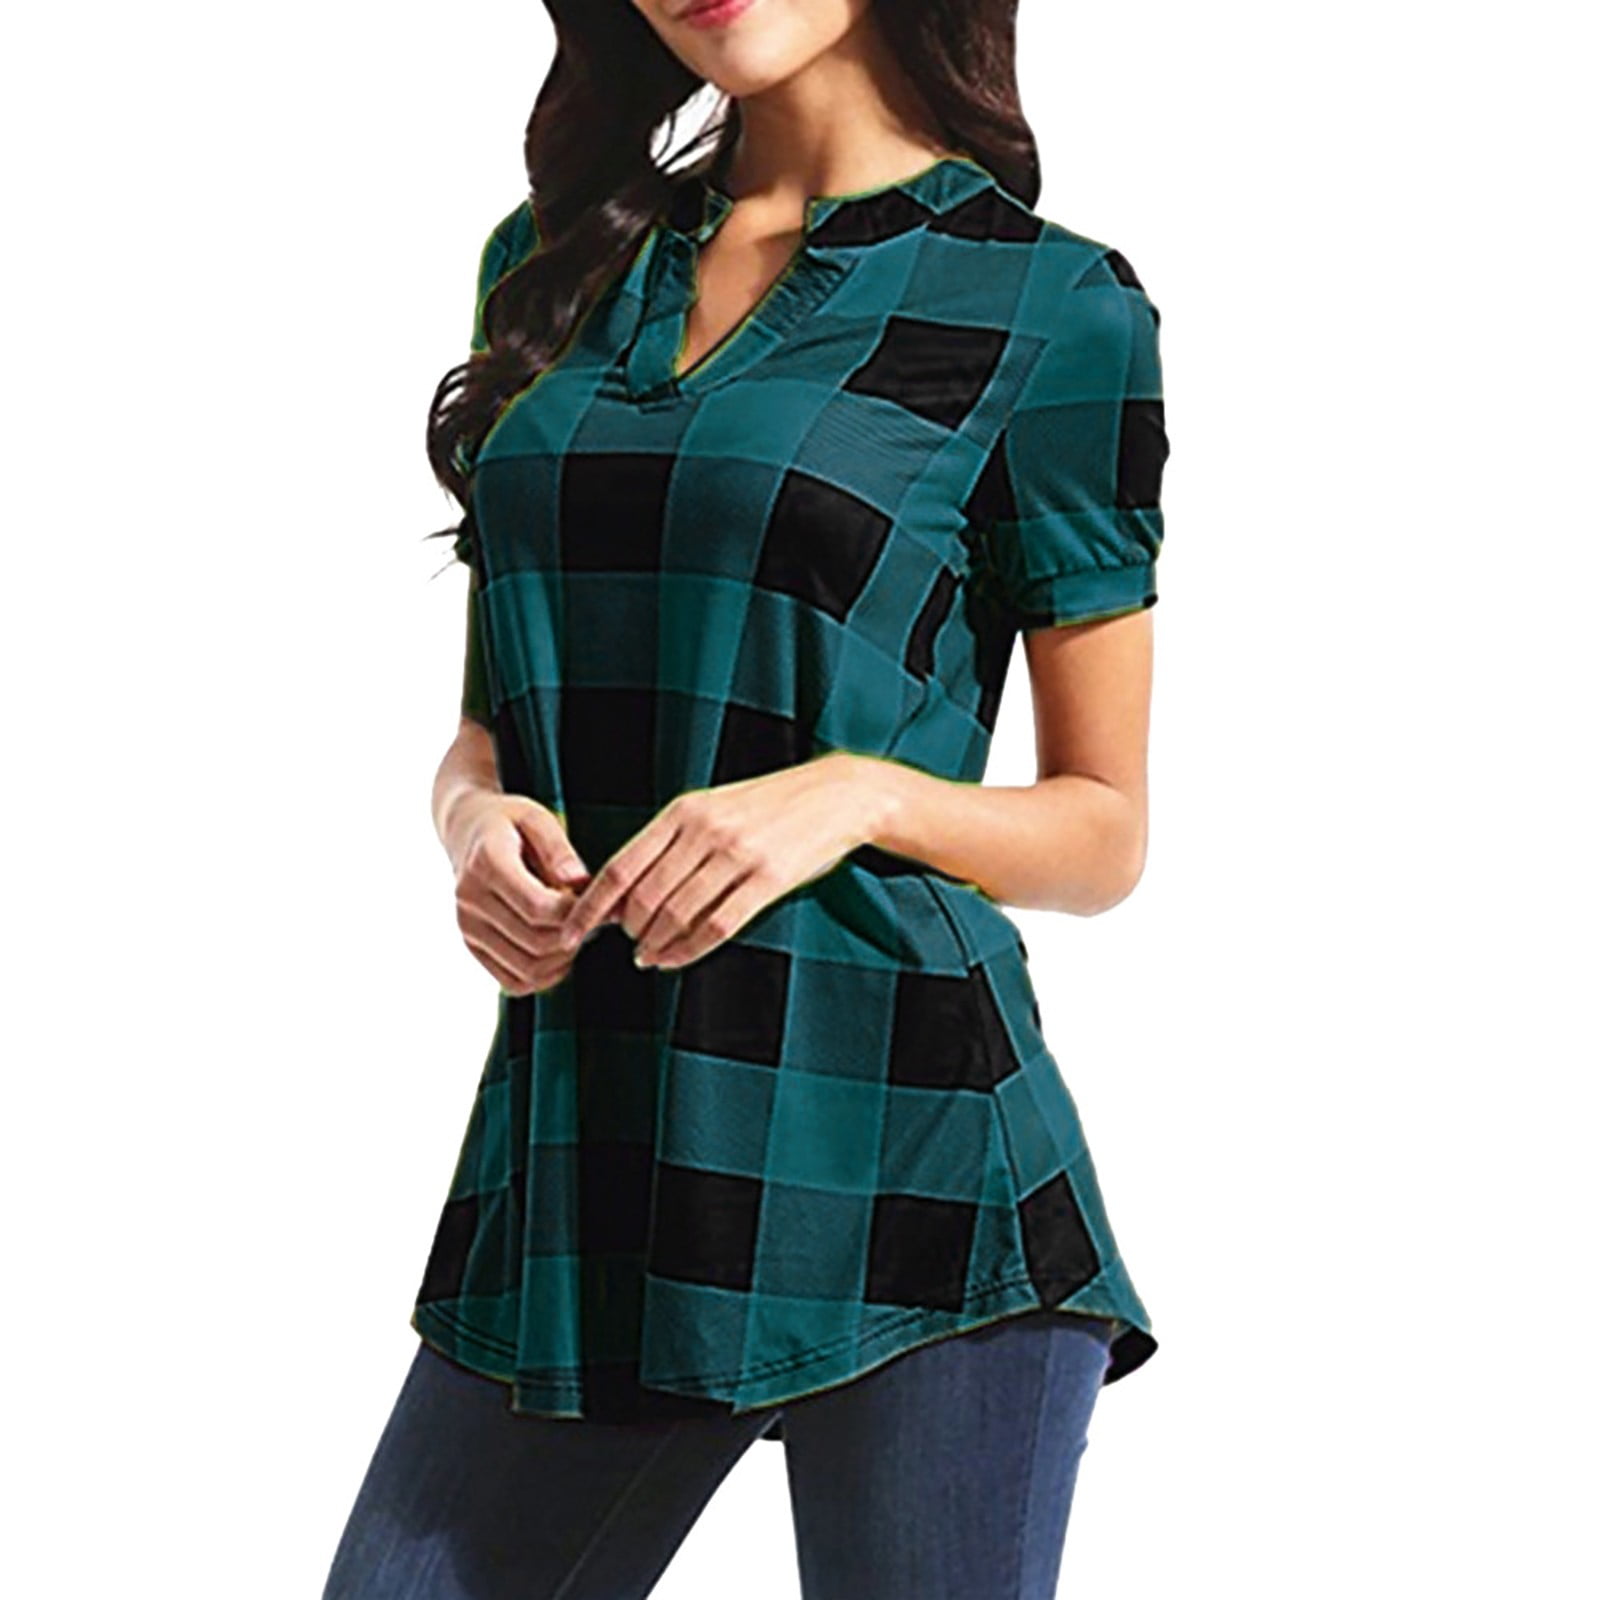 Alueeu women's top shirts Women Casual Plaid Printed Short Sleeve V-Neck  Irregular Hem Blouse T-Shirt Tops Green XL